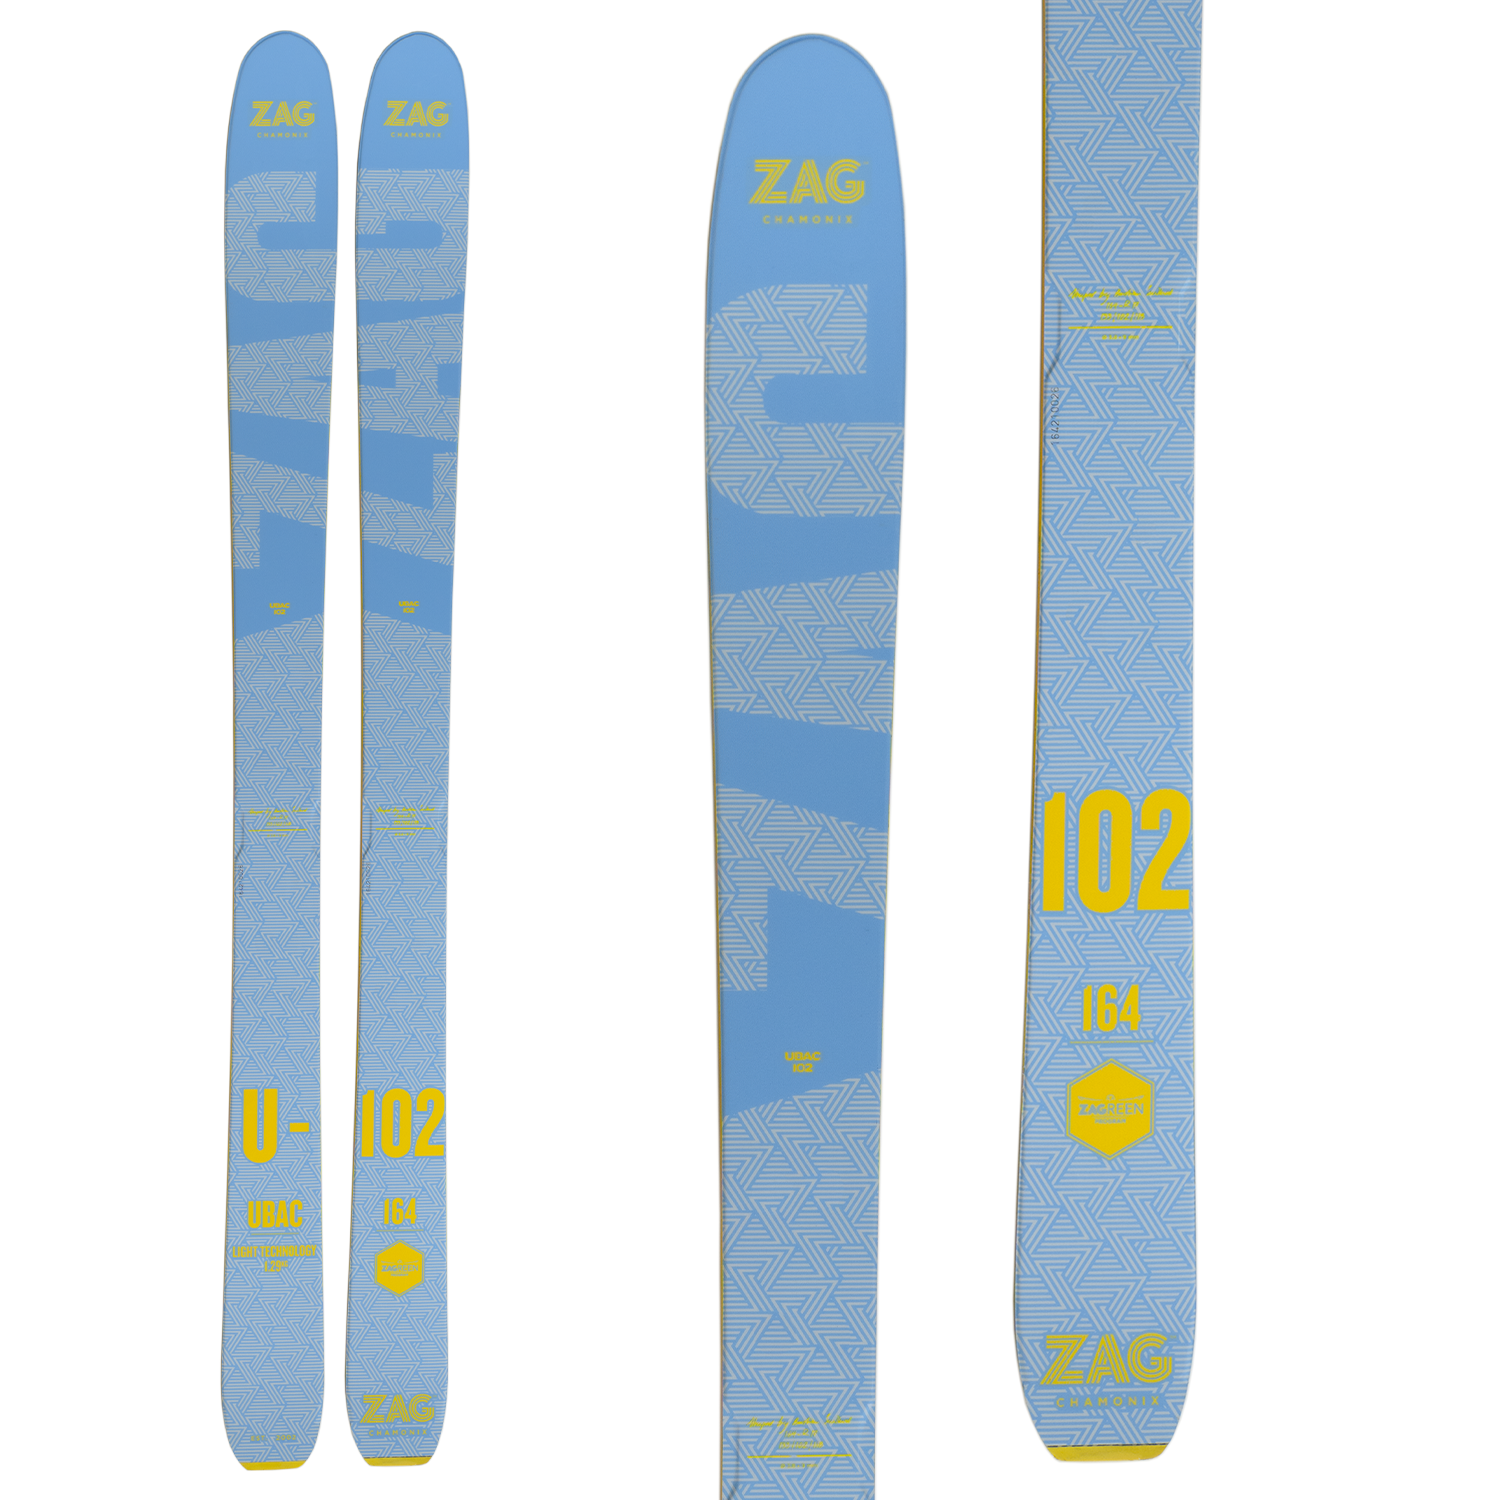 ZAG UBAC 102 Skis - Women's 2022 | evo